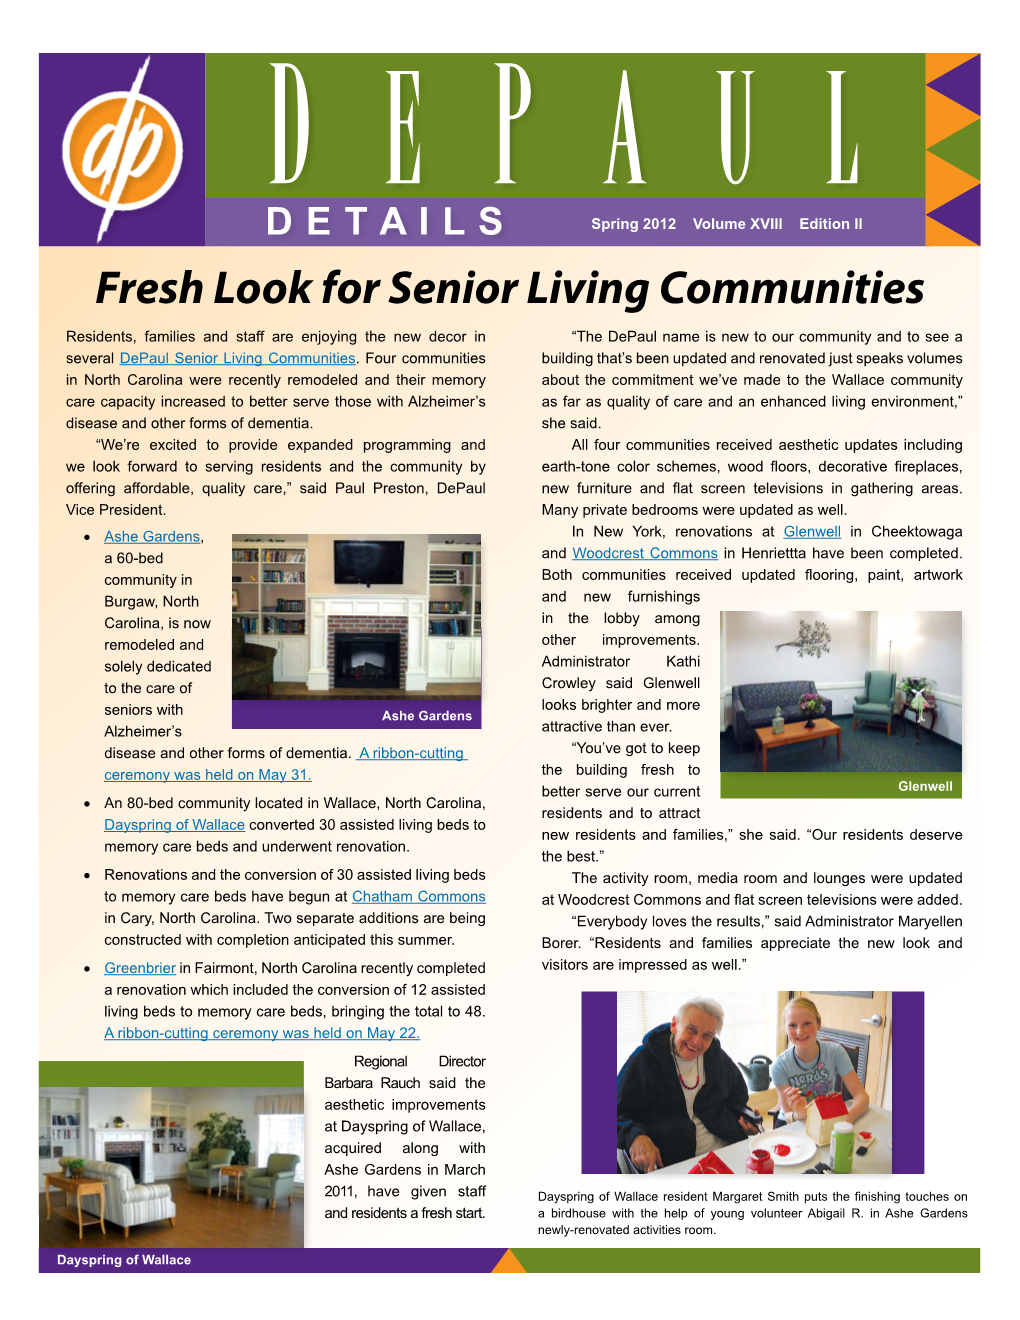 Fresh Look for Senior Living Communities